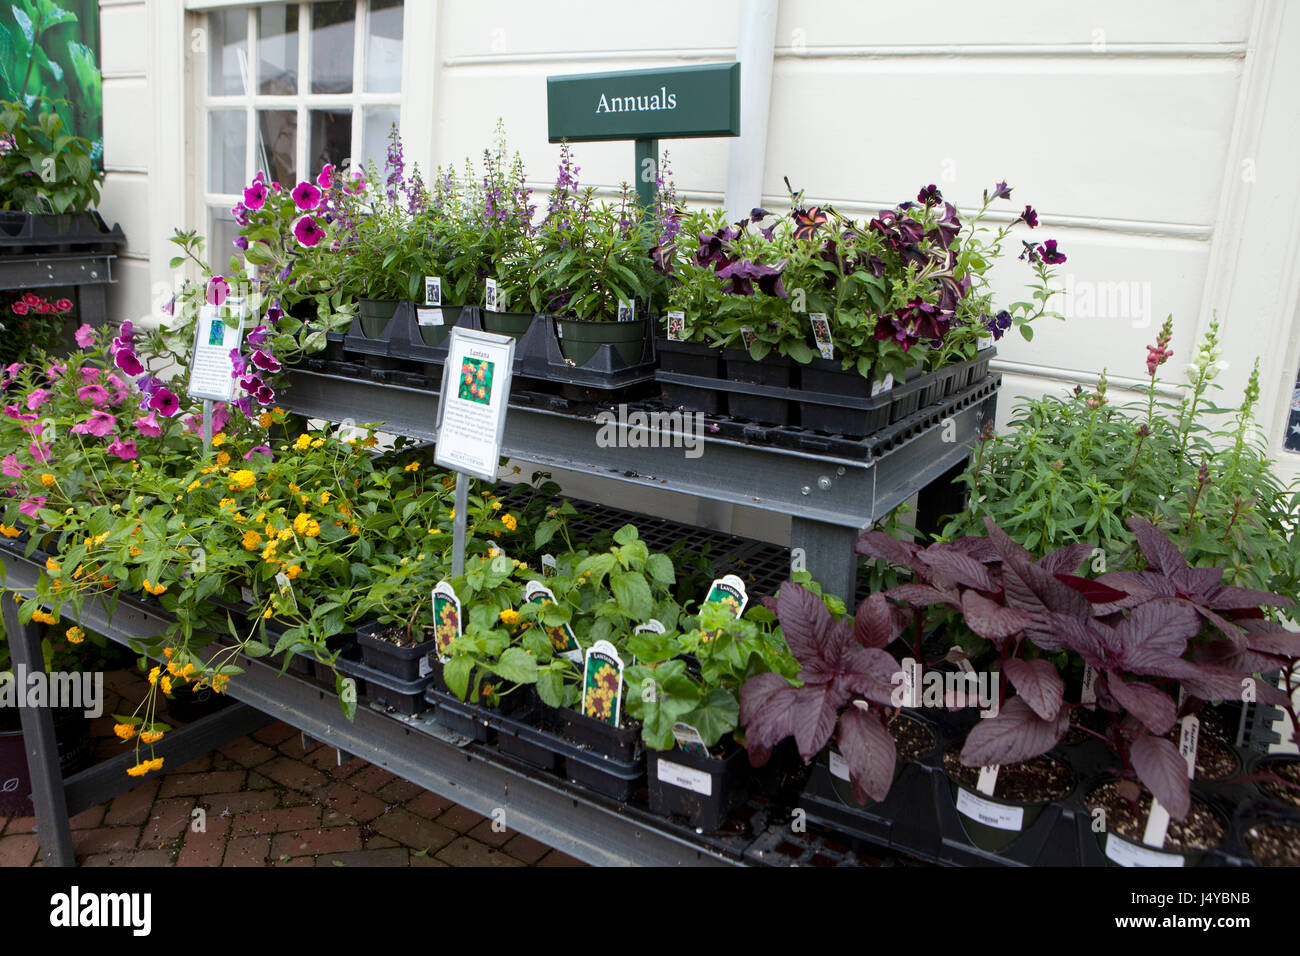 Annual garden plants for sale at garden center - USA Stock Photo